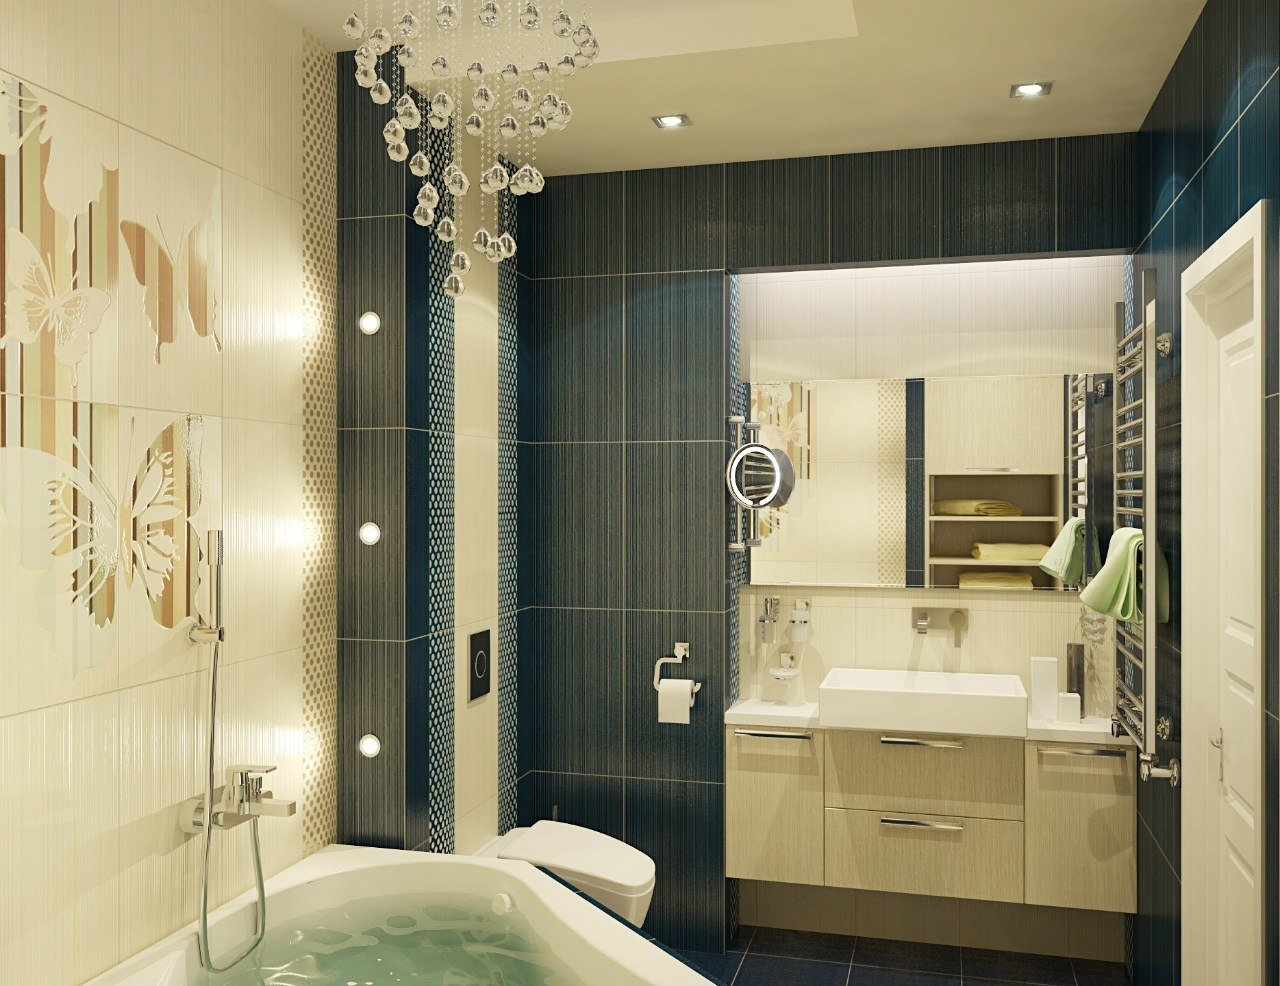 Ванная комната в панельном доме дизайн фото – ванная комната в панельном доме (44 фото): ремонт — строительная компания акфен